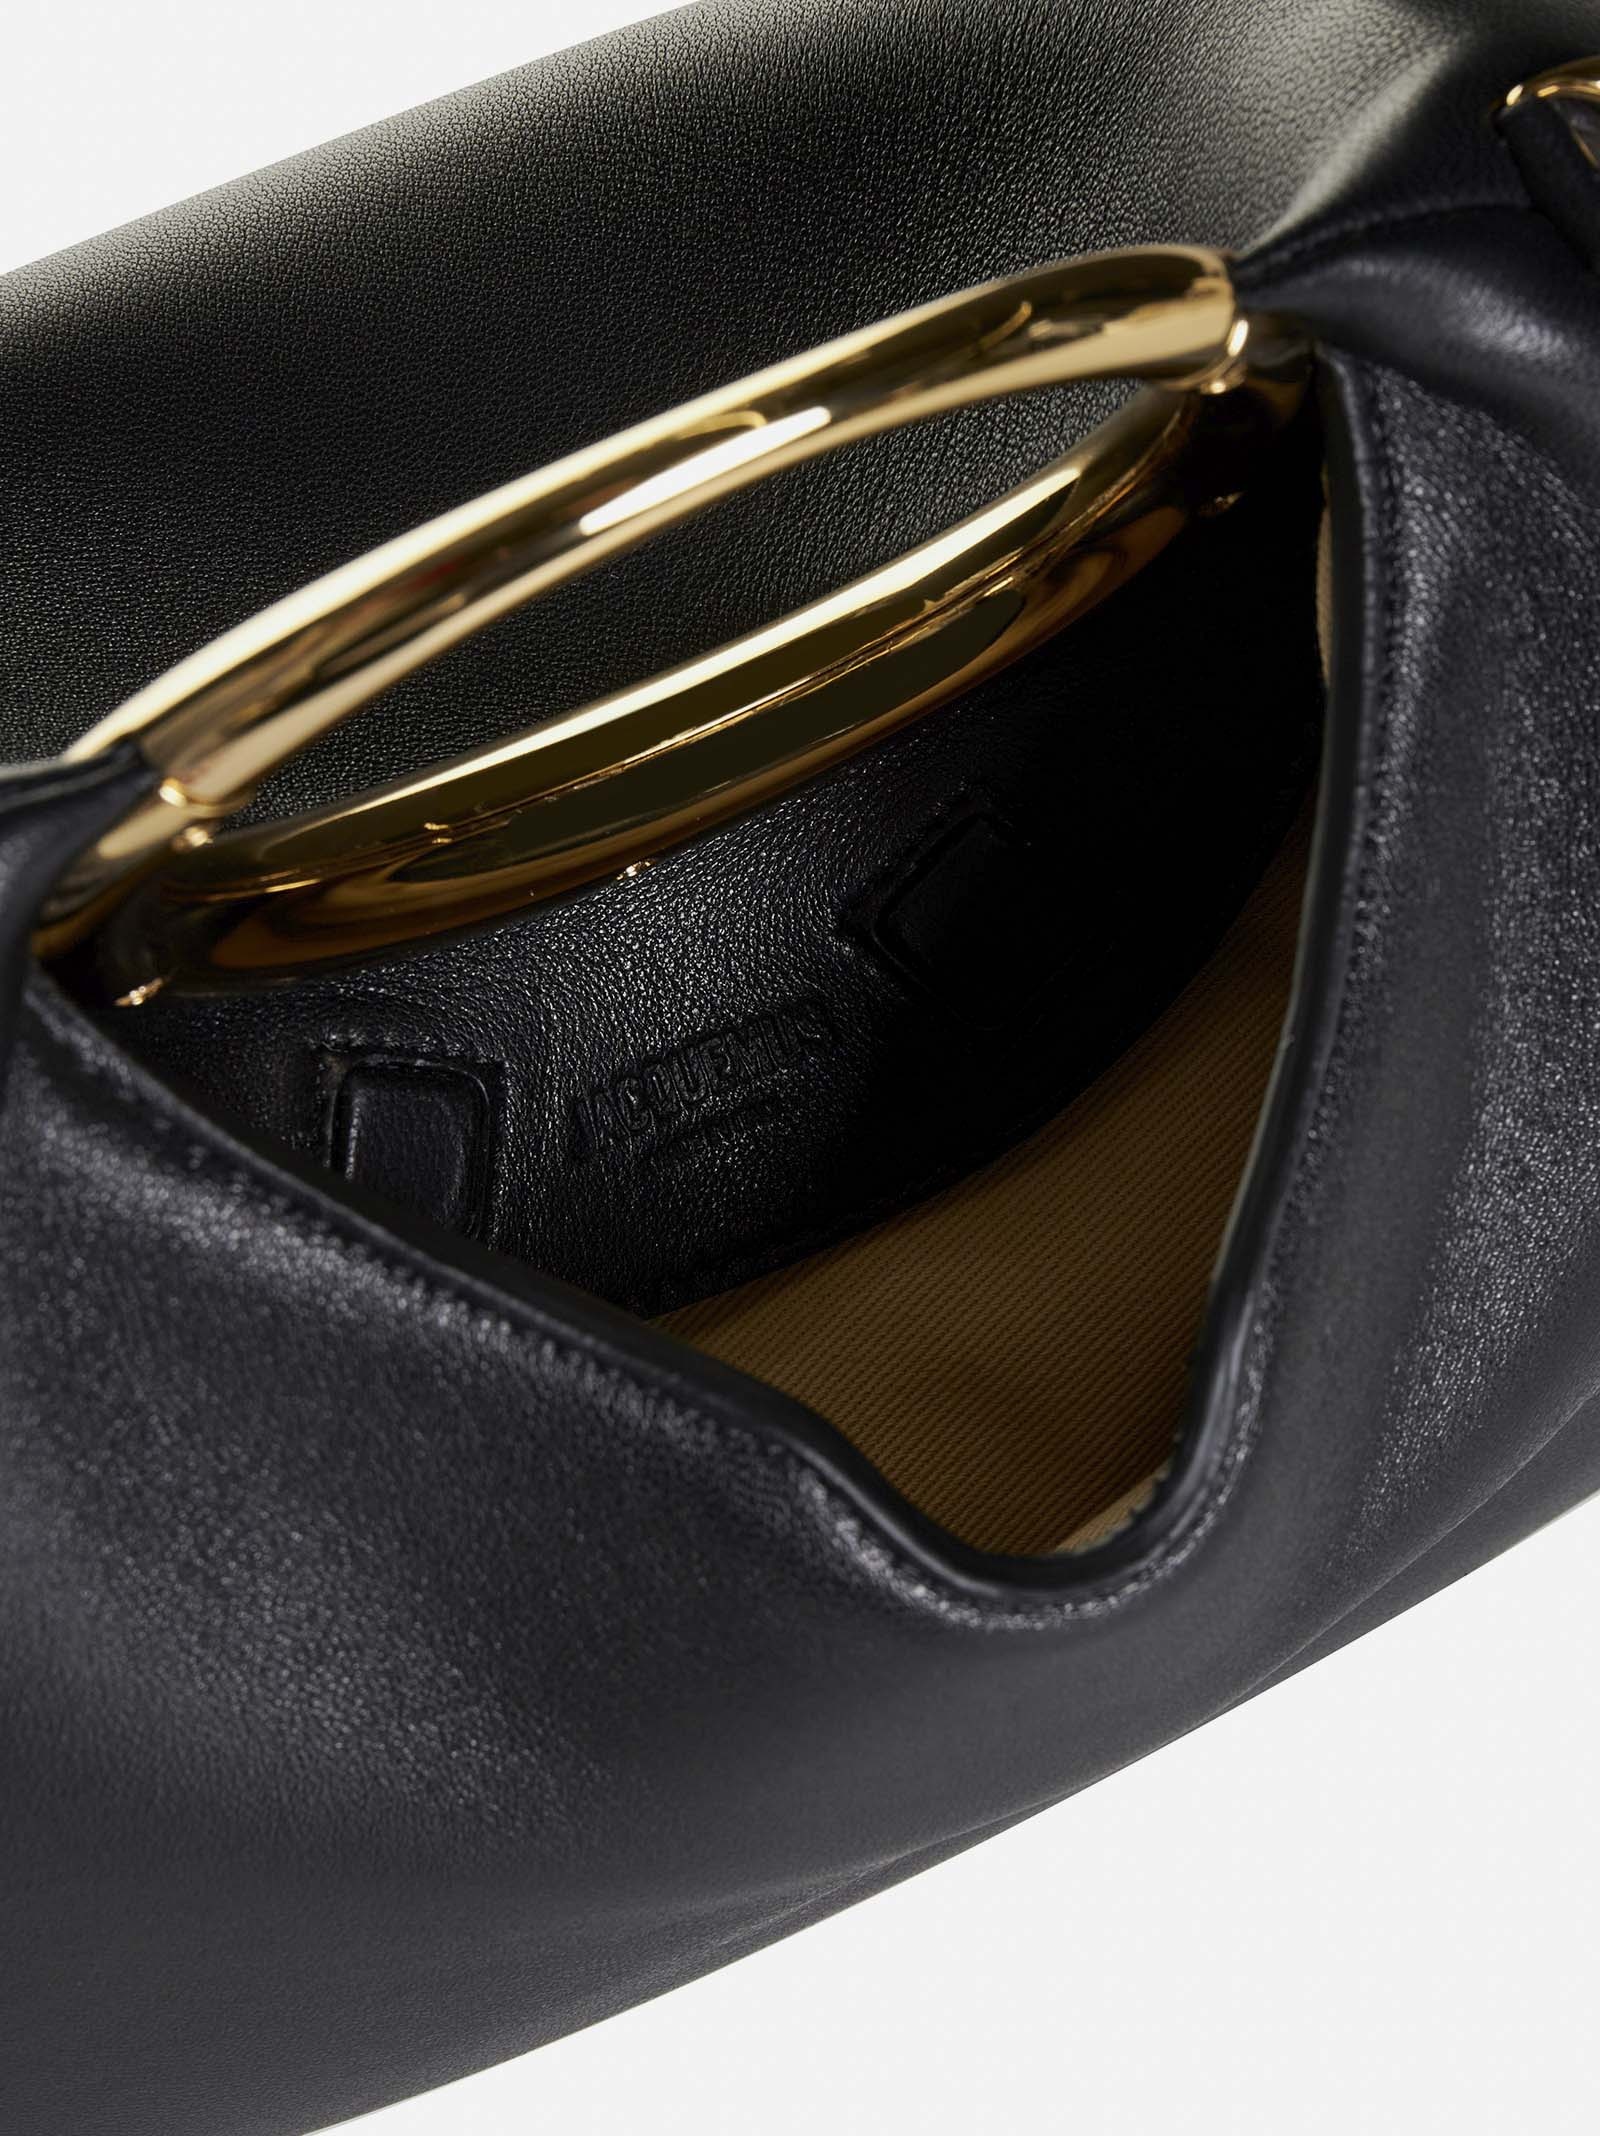 Le Calino leather bag - 6